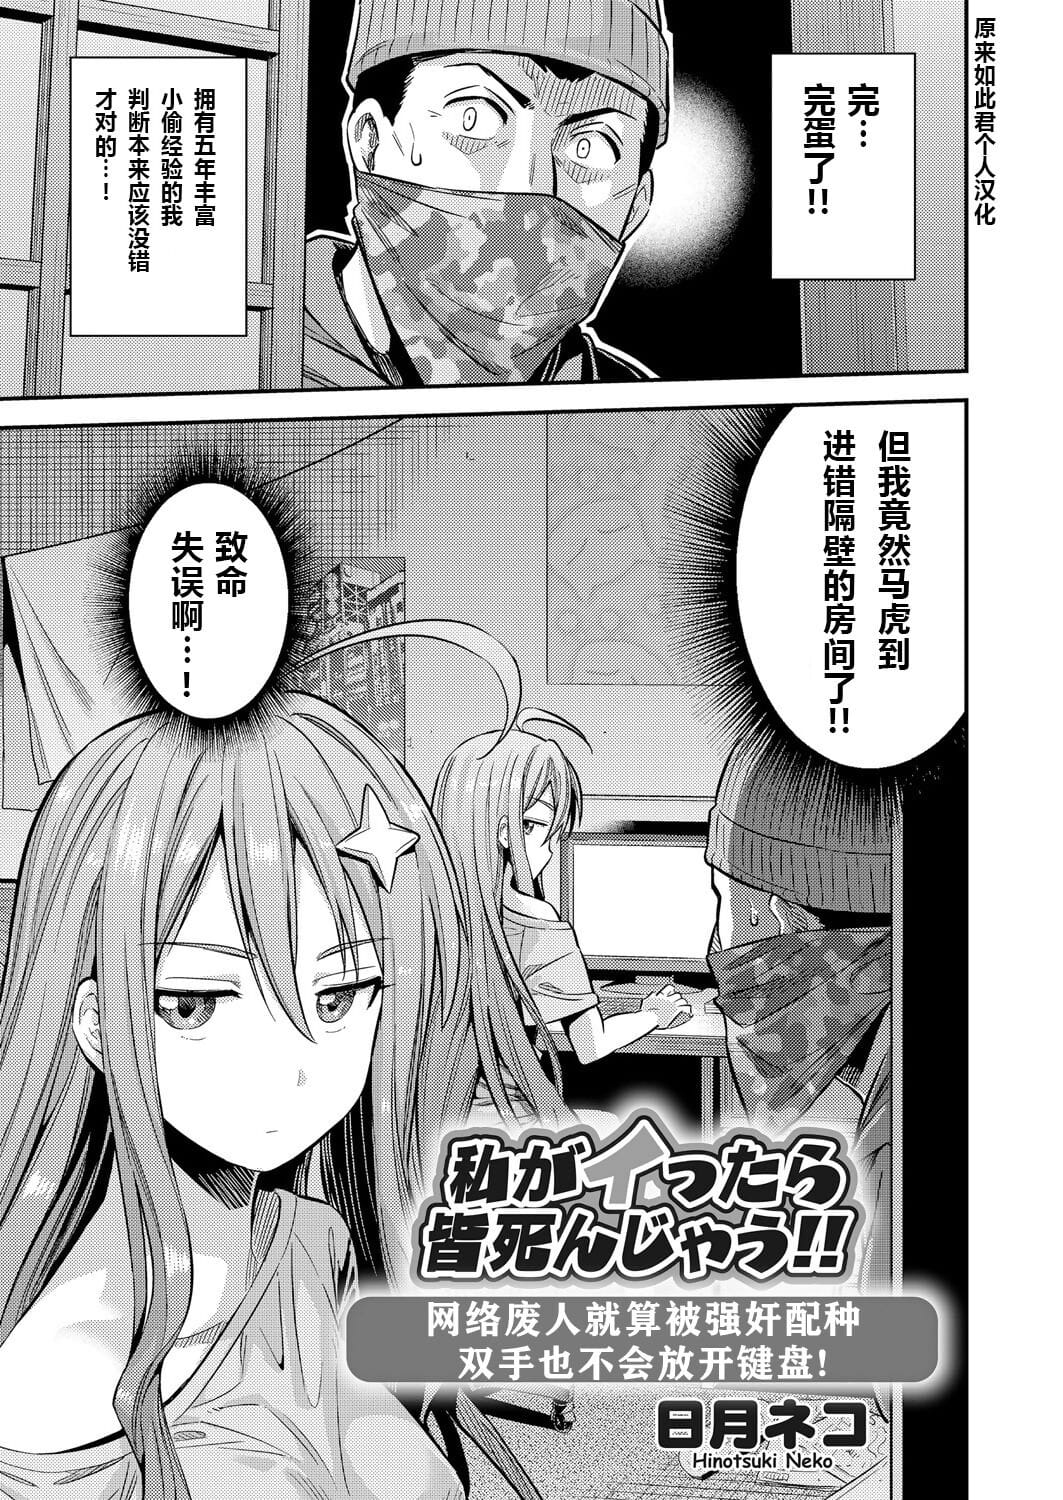 Watashi ga Ittara Mina Shinjau Netoge Haijin wa Tanetsuke Rape saretemo Te ga Hanasenain desu! page 1